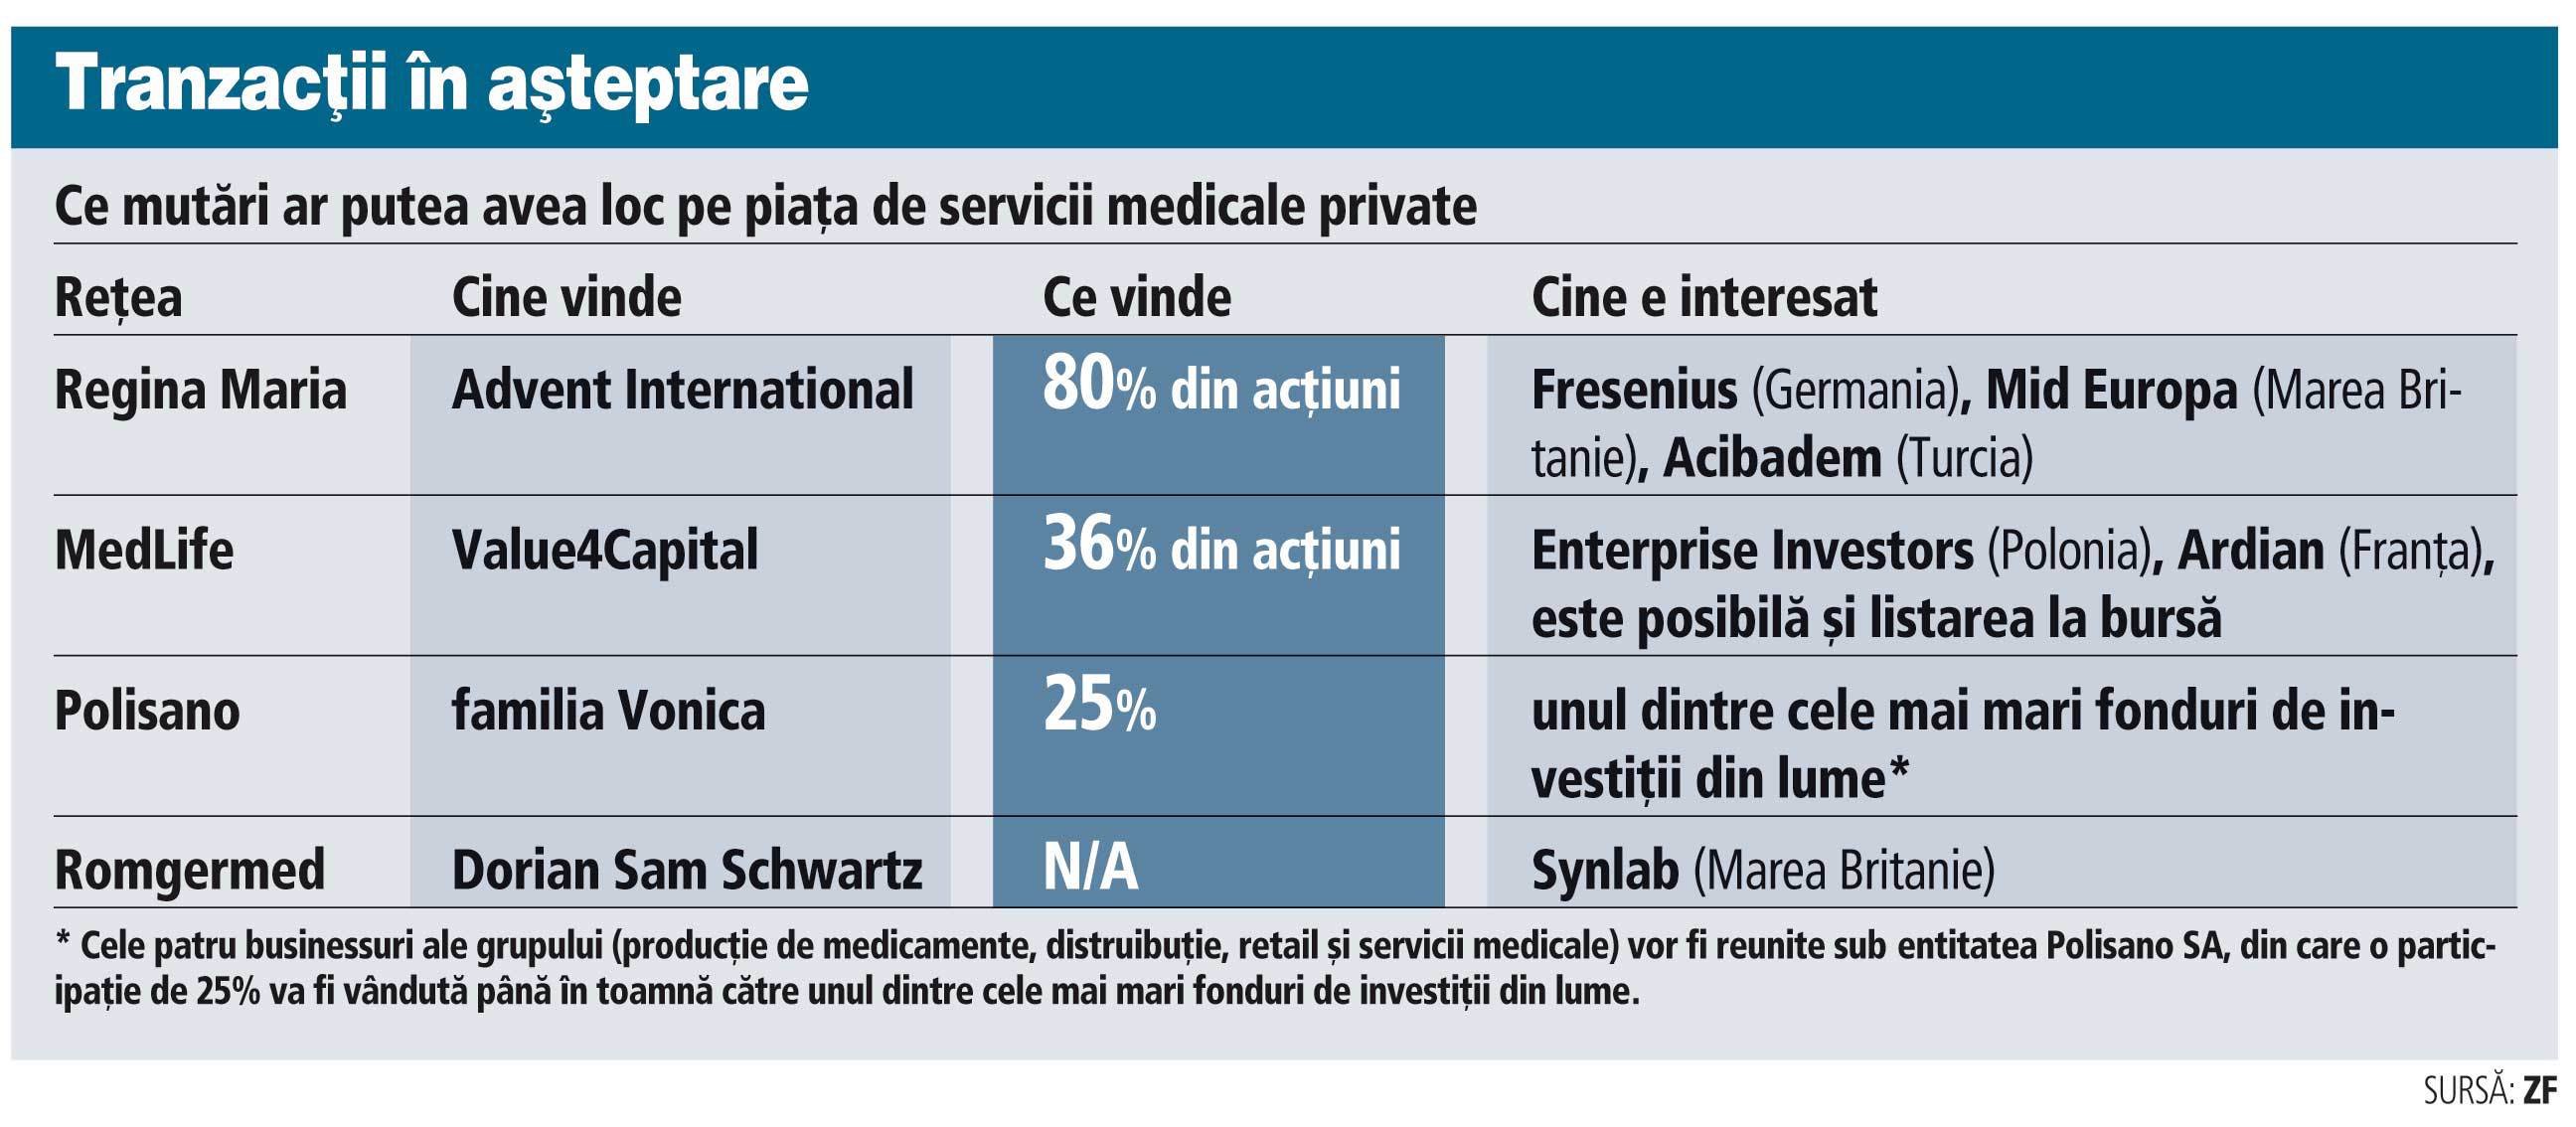 Care sunt cele mai mari tranzacţii aşteptate pe piaţa serviciilor medicale private în acest an